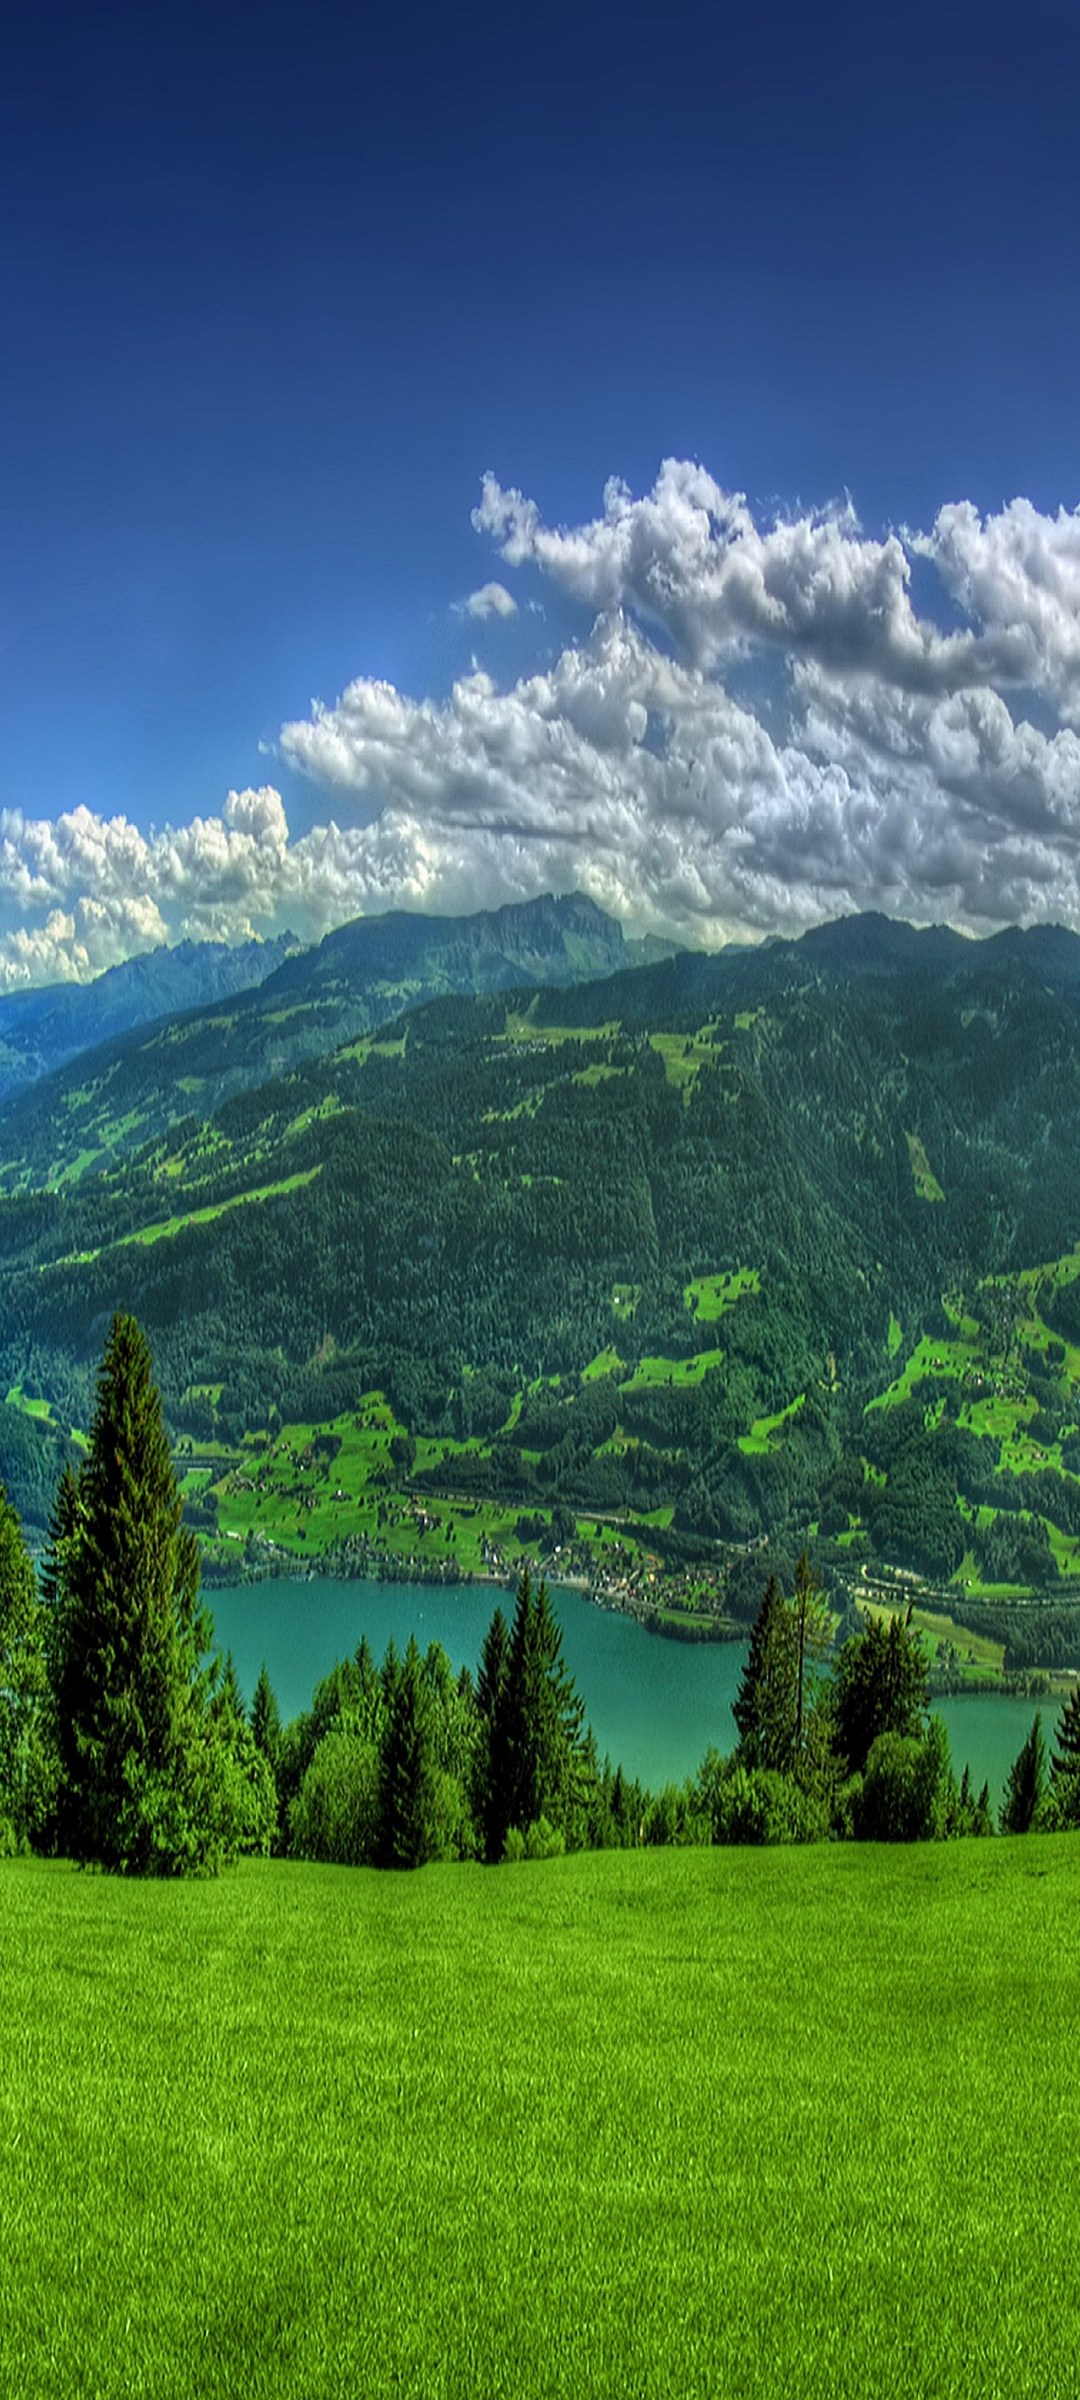 綺麗な山と麓の湖 Galaxy S21 5g Androidスマホ壁紙 待ち受け スマラン